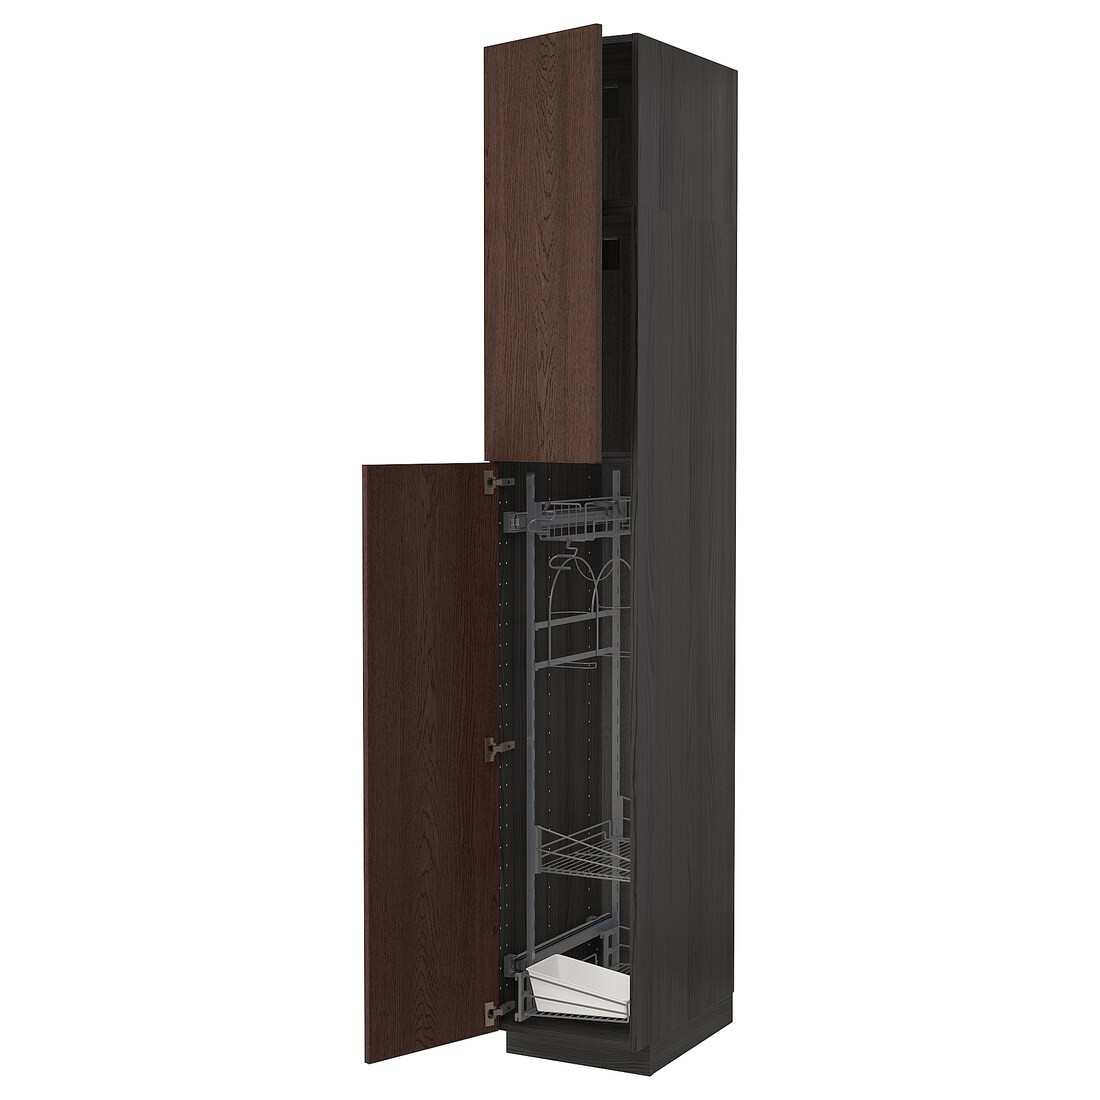 METOD МЕТОД Высокий шкаф с отделением для аксессуаров для уборки, черный / Sinarp коричневый, 40x60x240 см